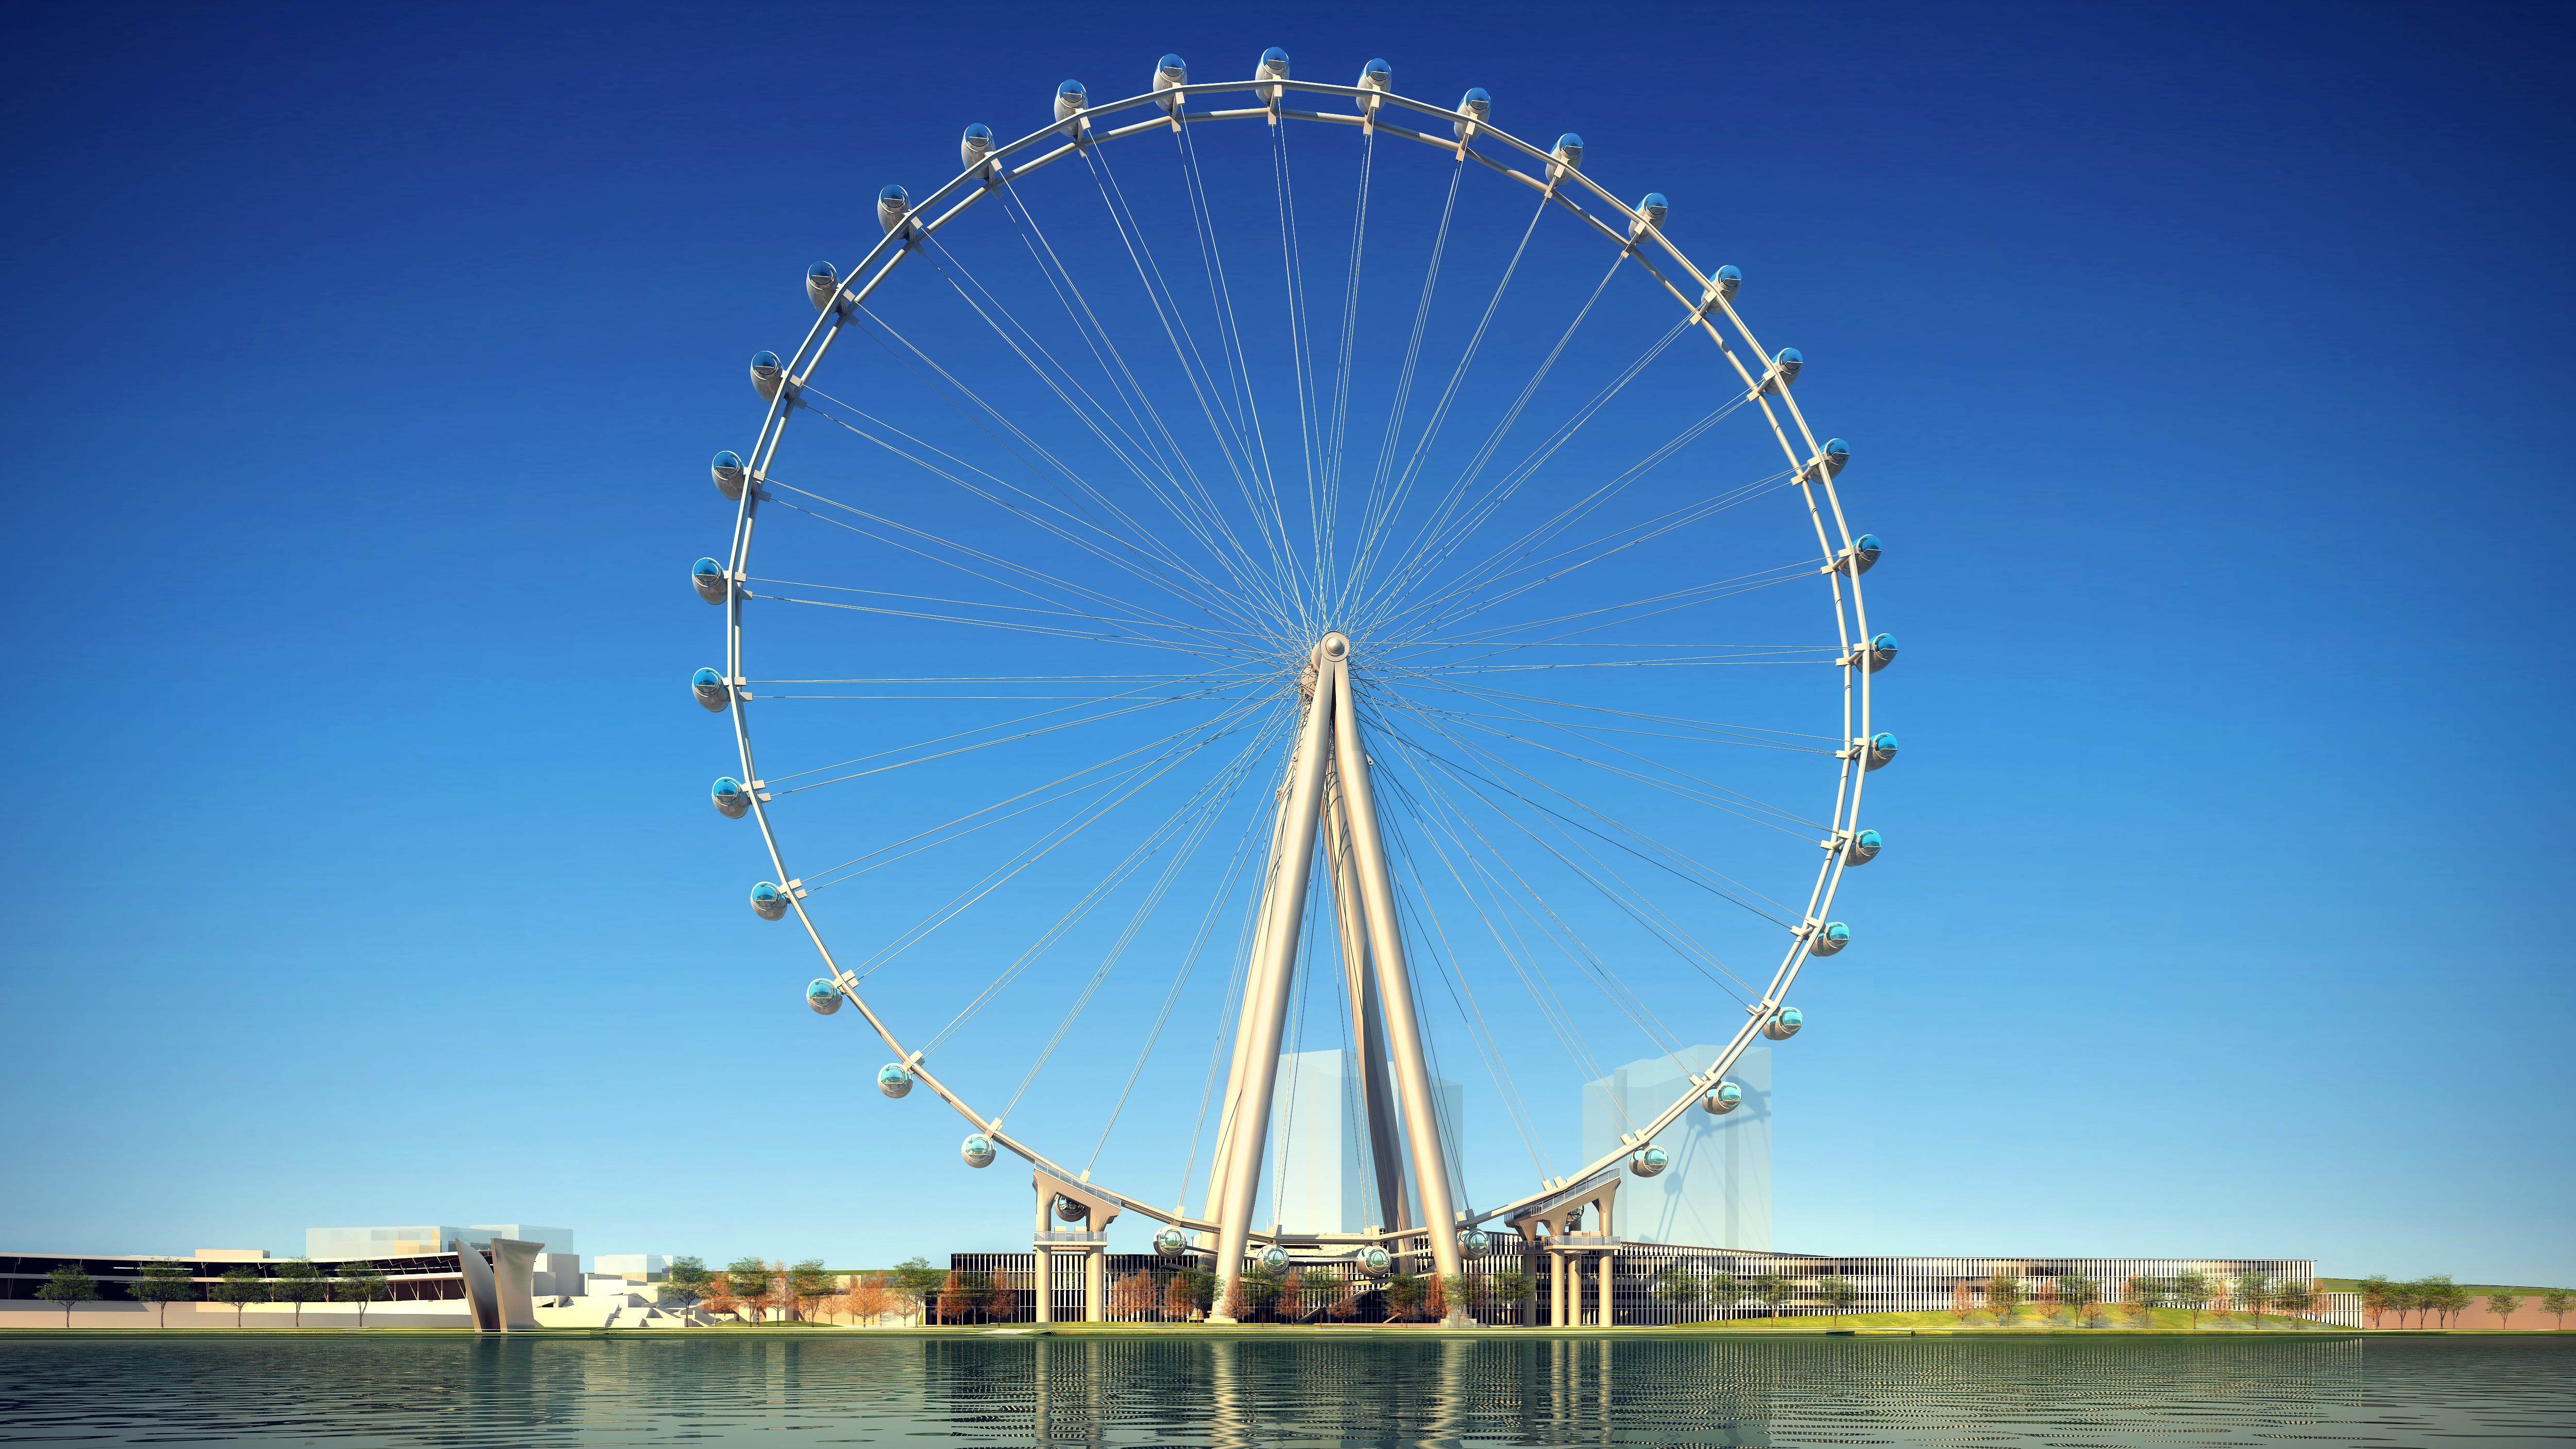 Beperken zin naakt Here's how Ferris wheel idea has fared elsewhere